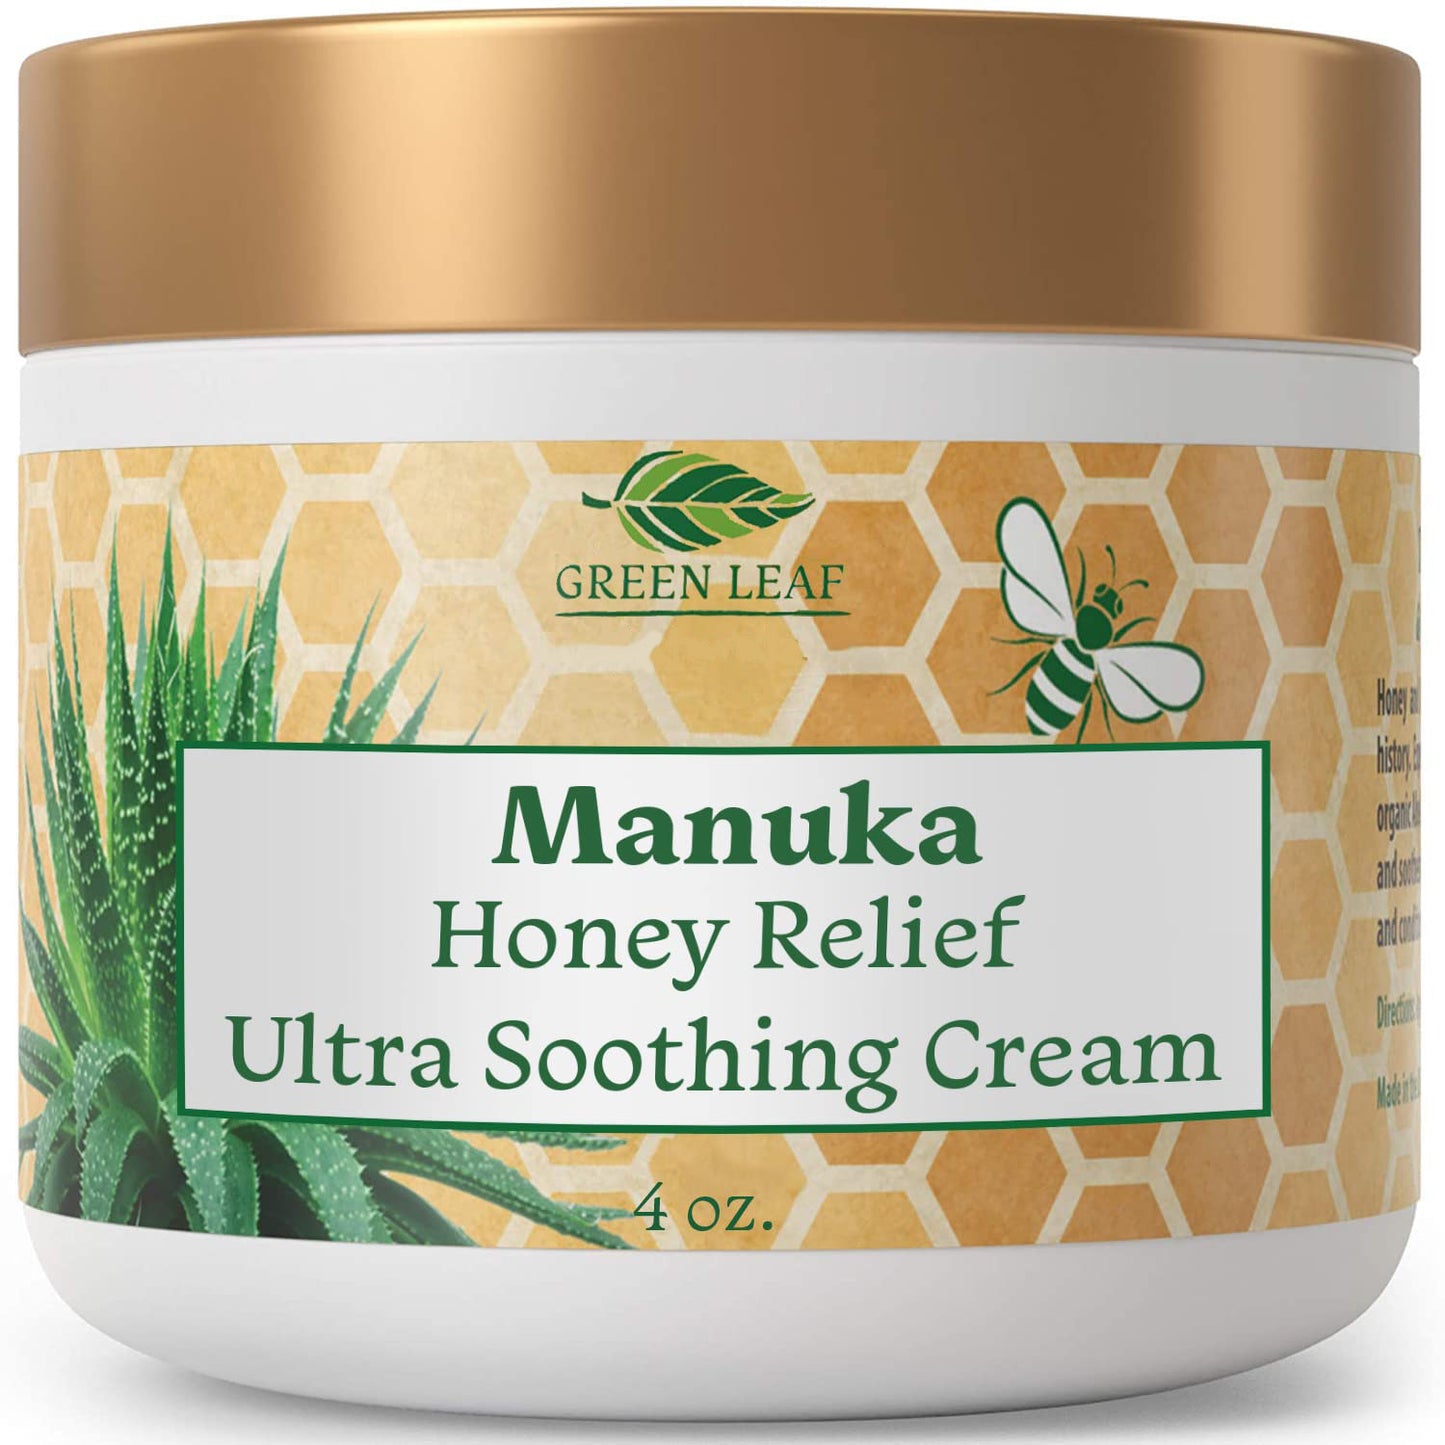 Manuka Honey Moisturizing Cream by Amazing Aloe Vera